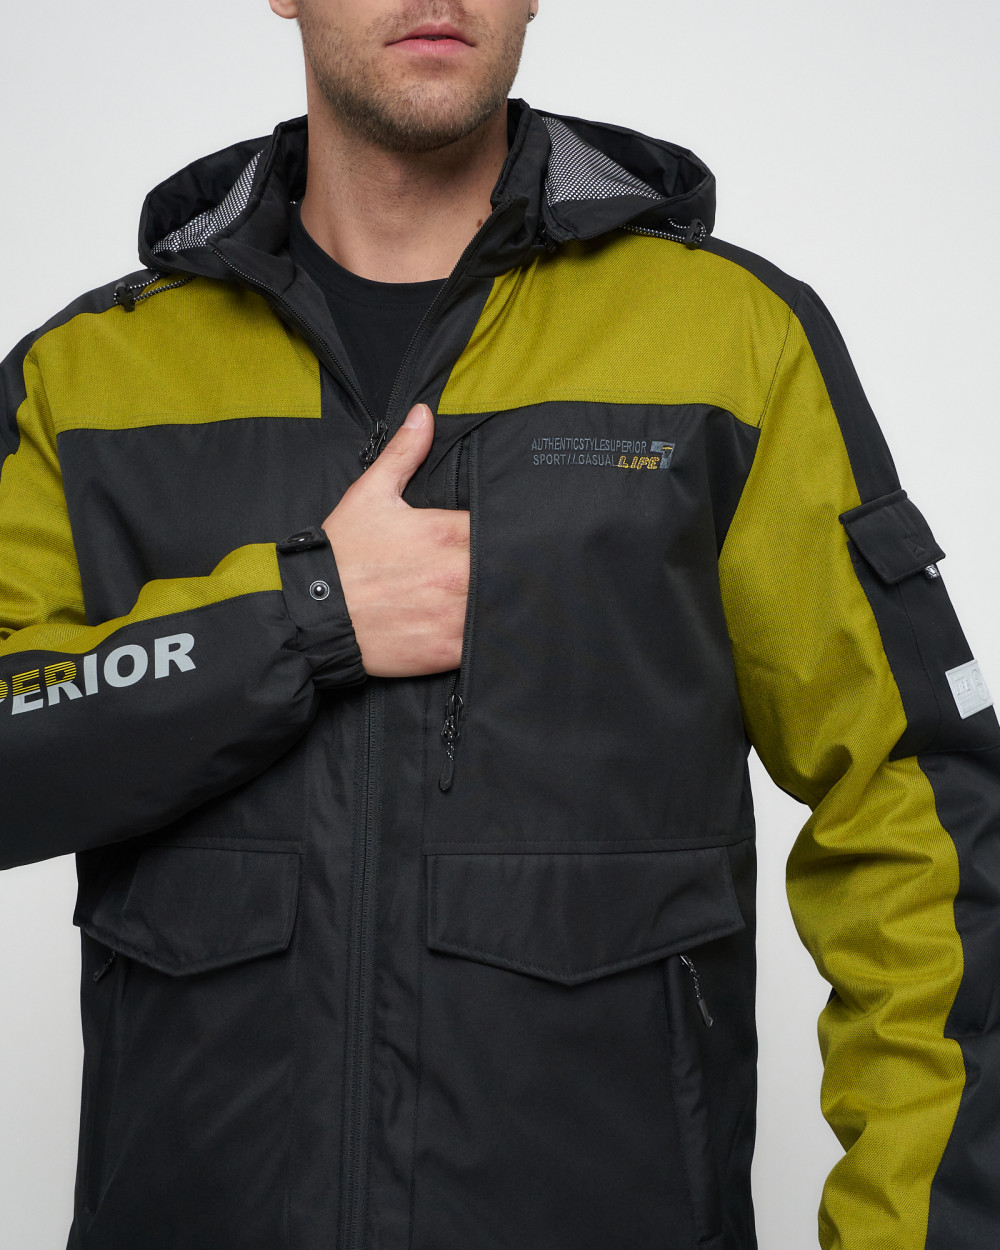 Купить куртку мужскую спортивную весеннюю оптом от производителя недорого в Москве 8816Ch 1